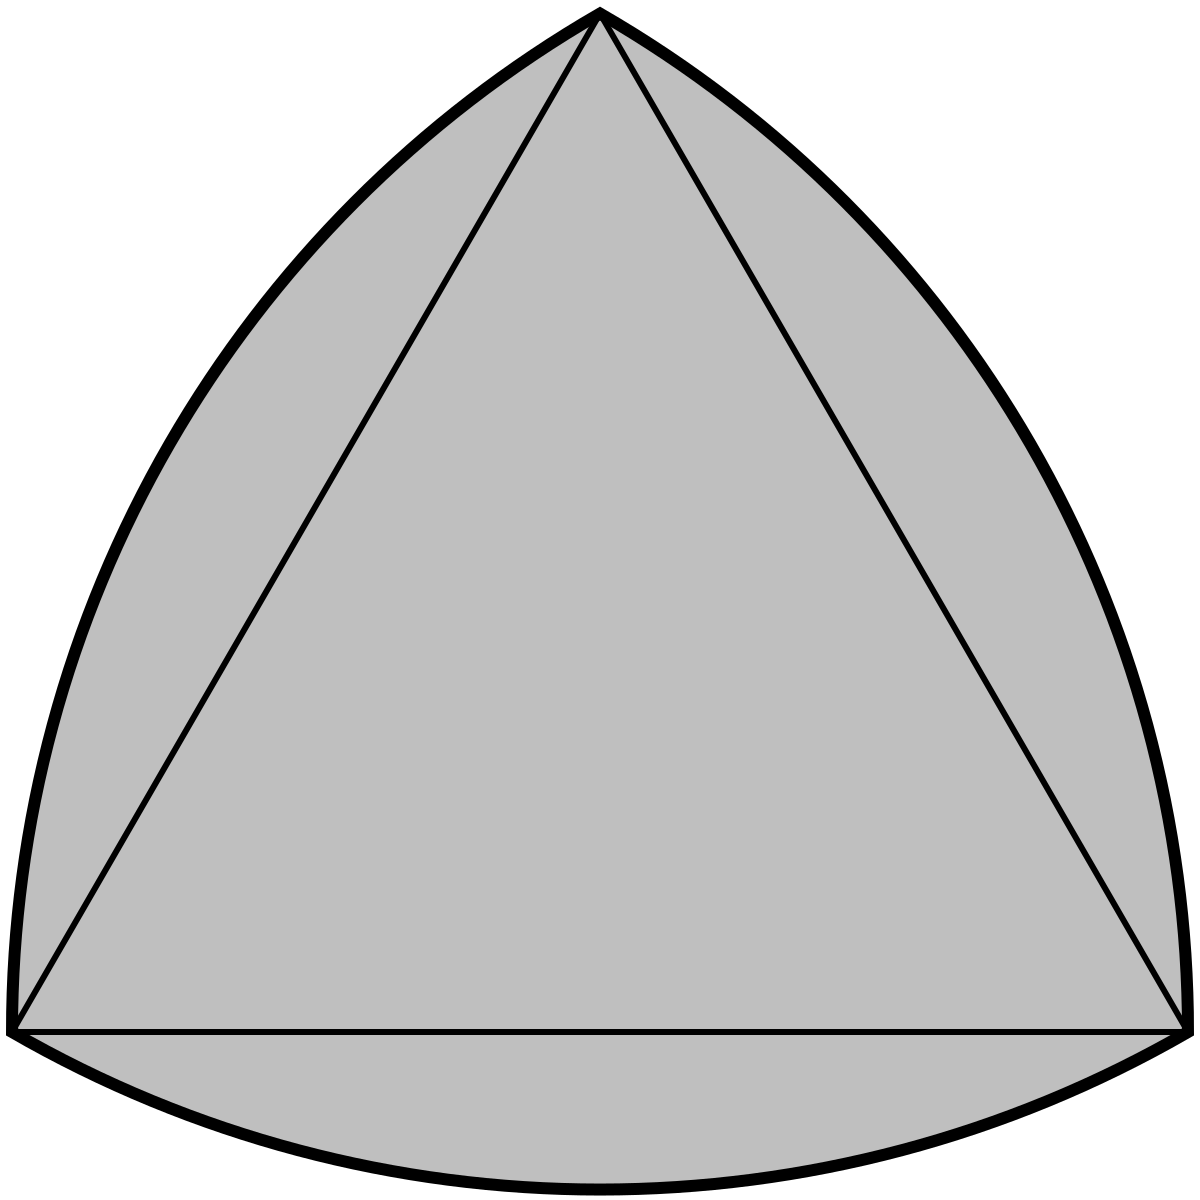 Reuleaux triangle - Wikipedia